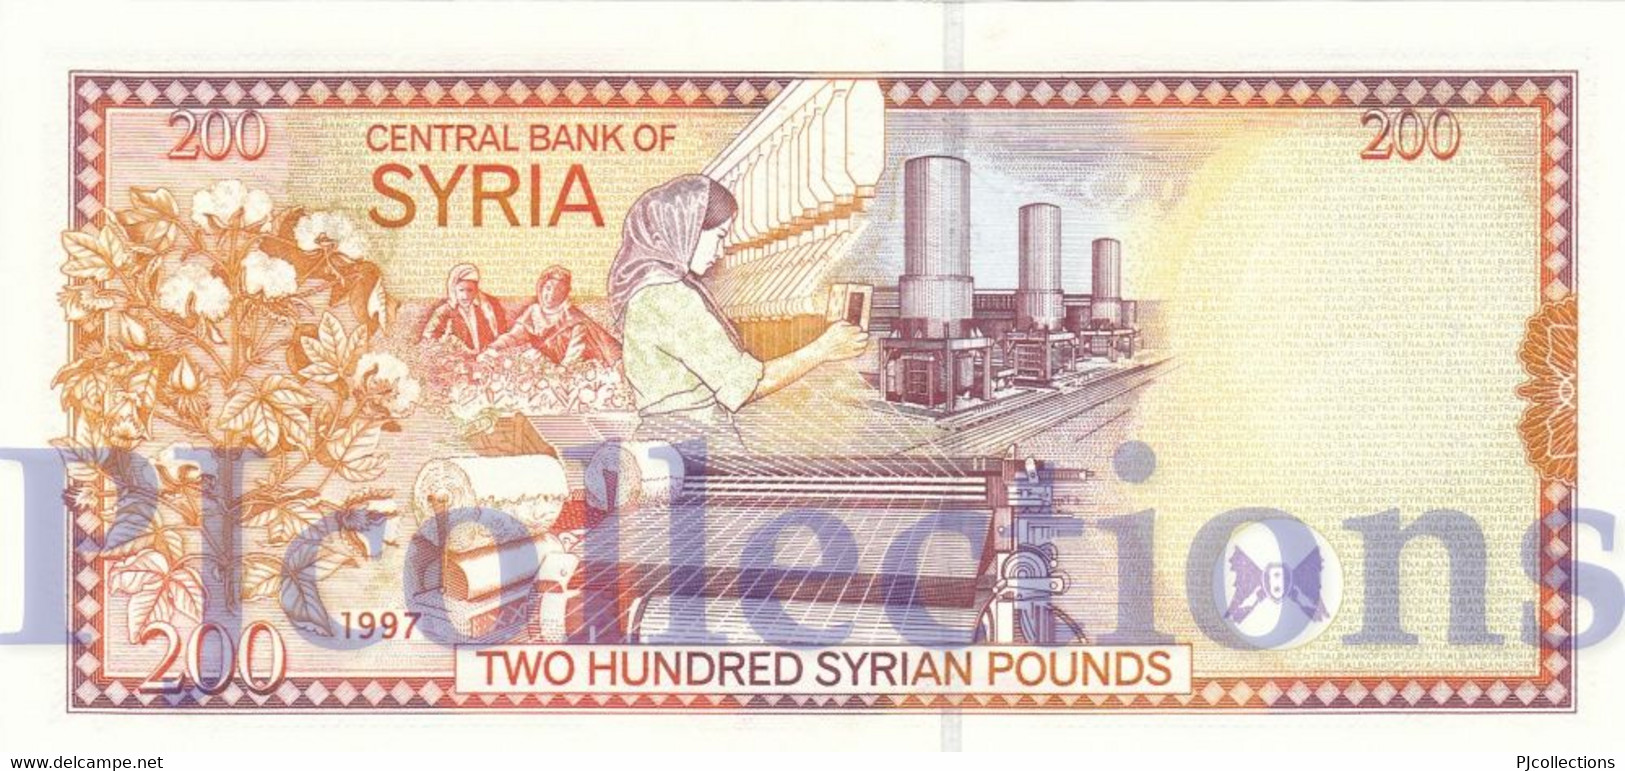 BABYLON - SYRIA 200 POUNDS 1997 PICK 109 UNC - Siria